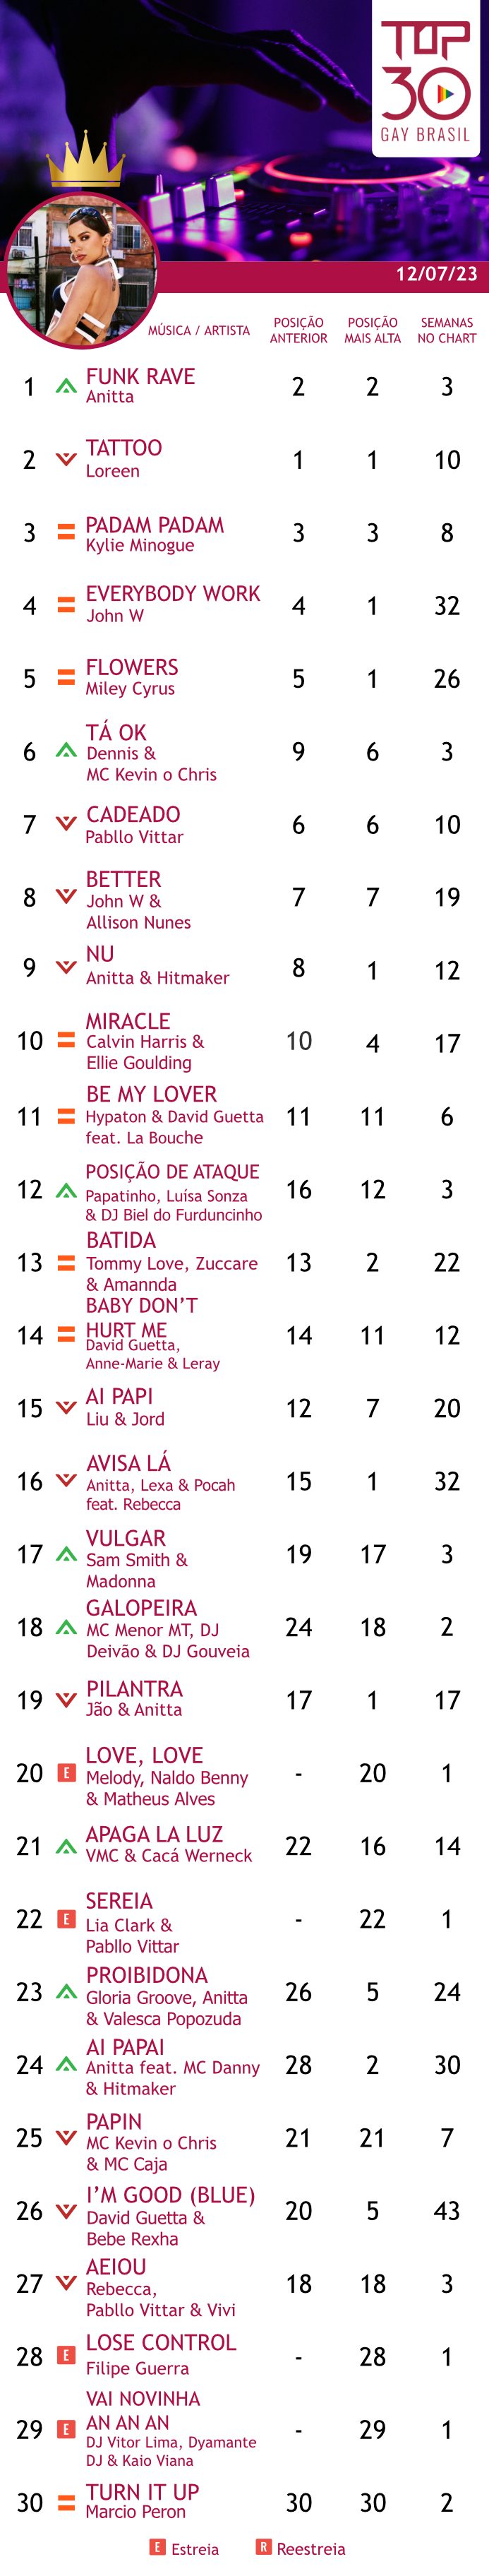 Só sucesso: Anitta emplaca três lançamentos no TOP 10 do Spotify